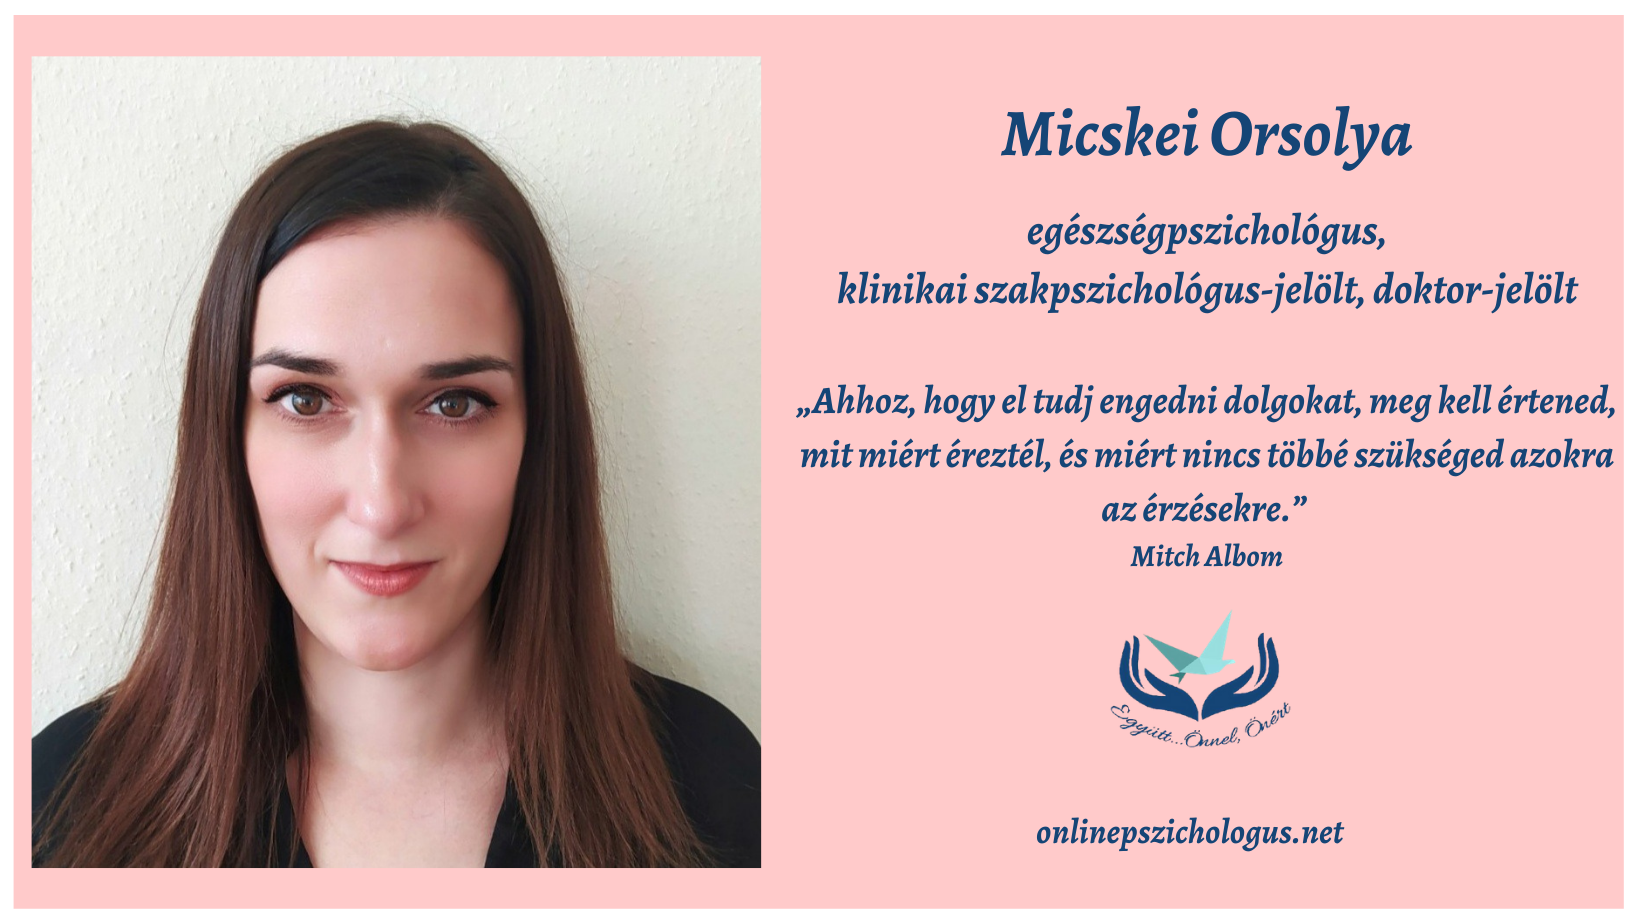 Interjú Micskei Orsolya pszichológussal